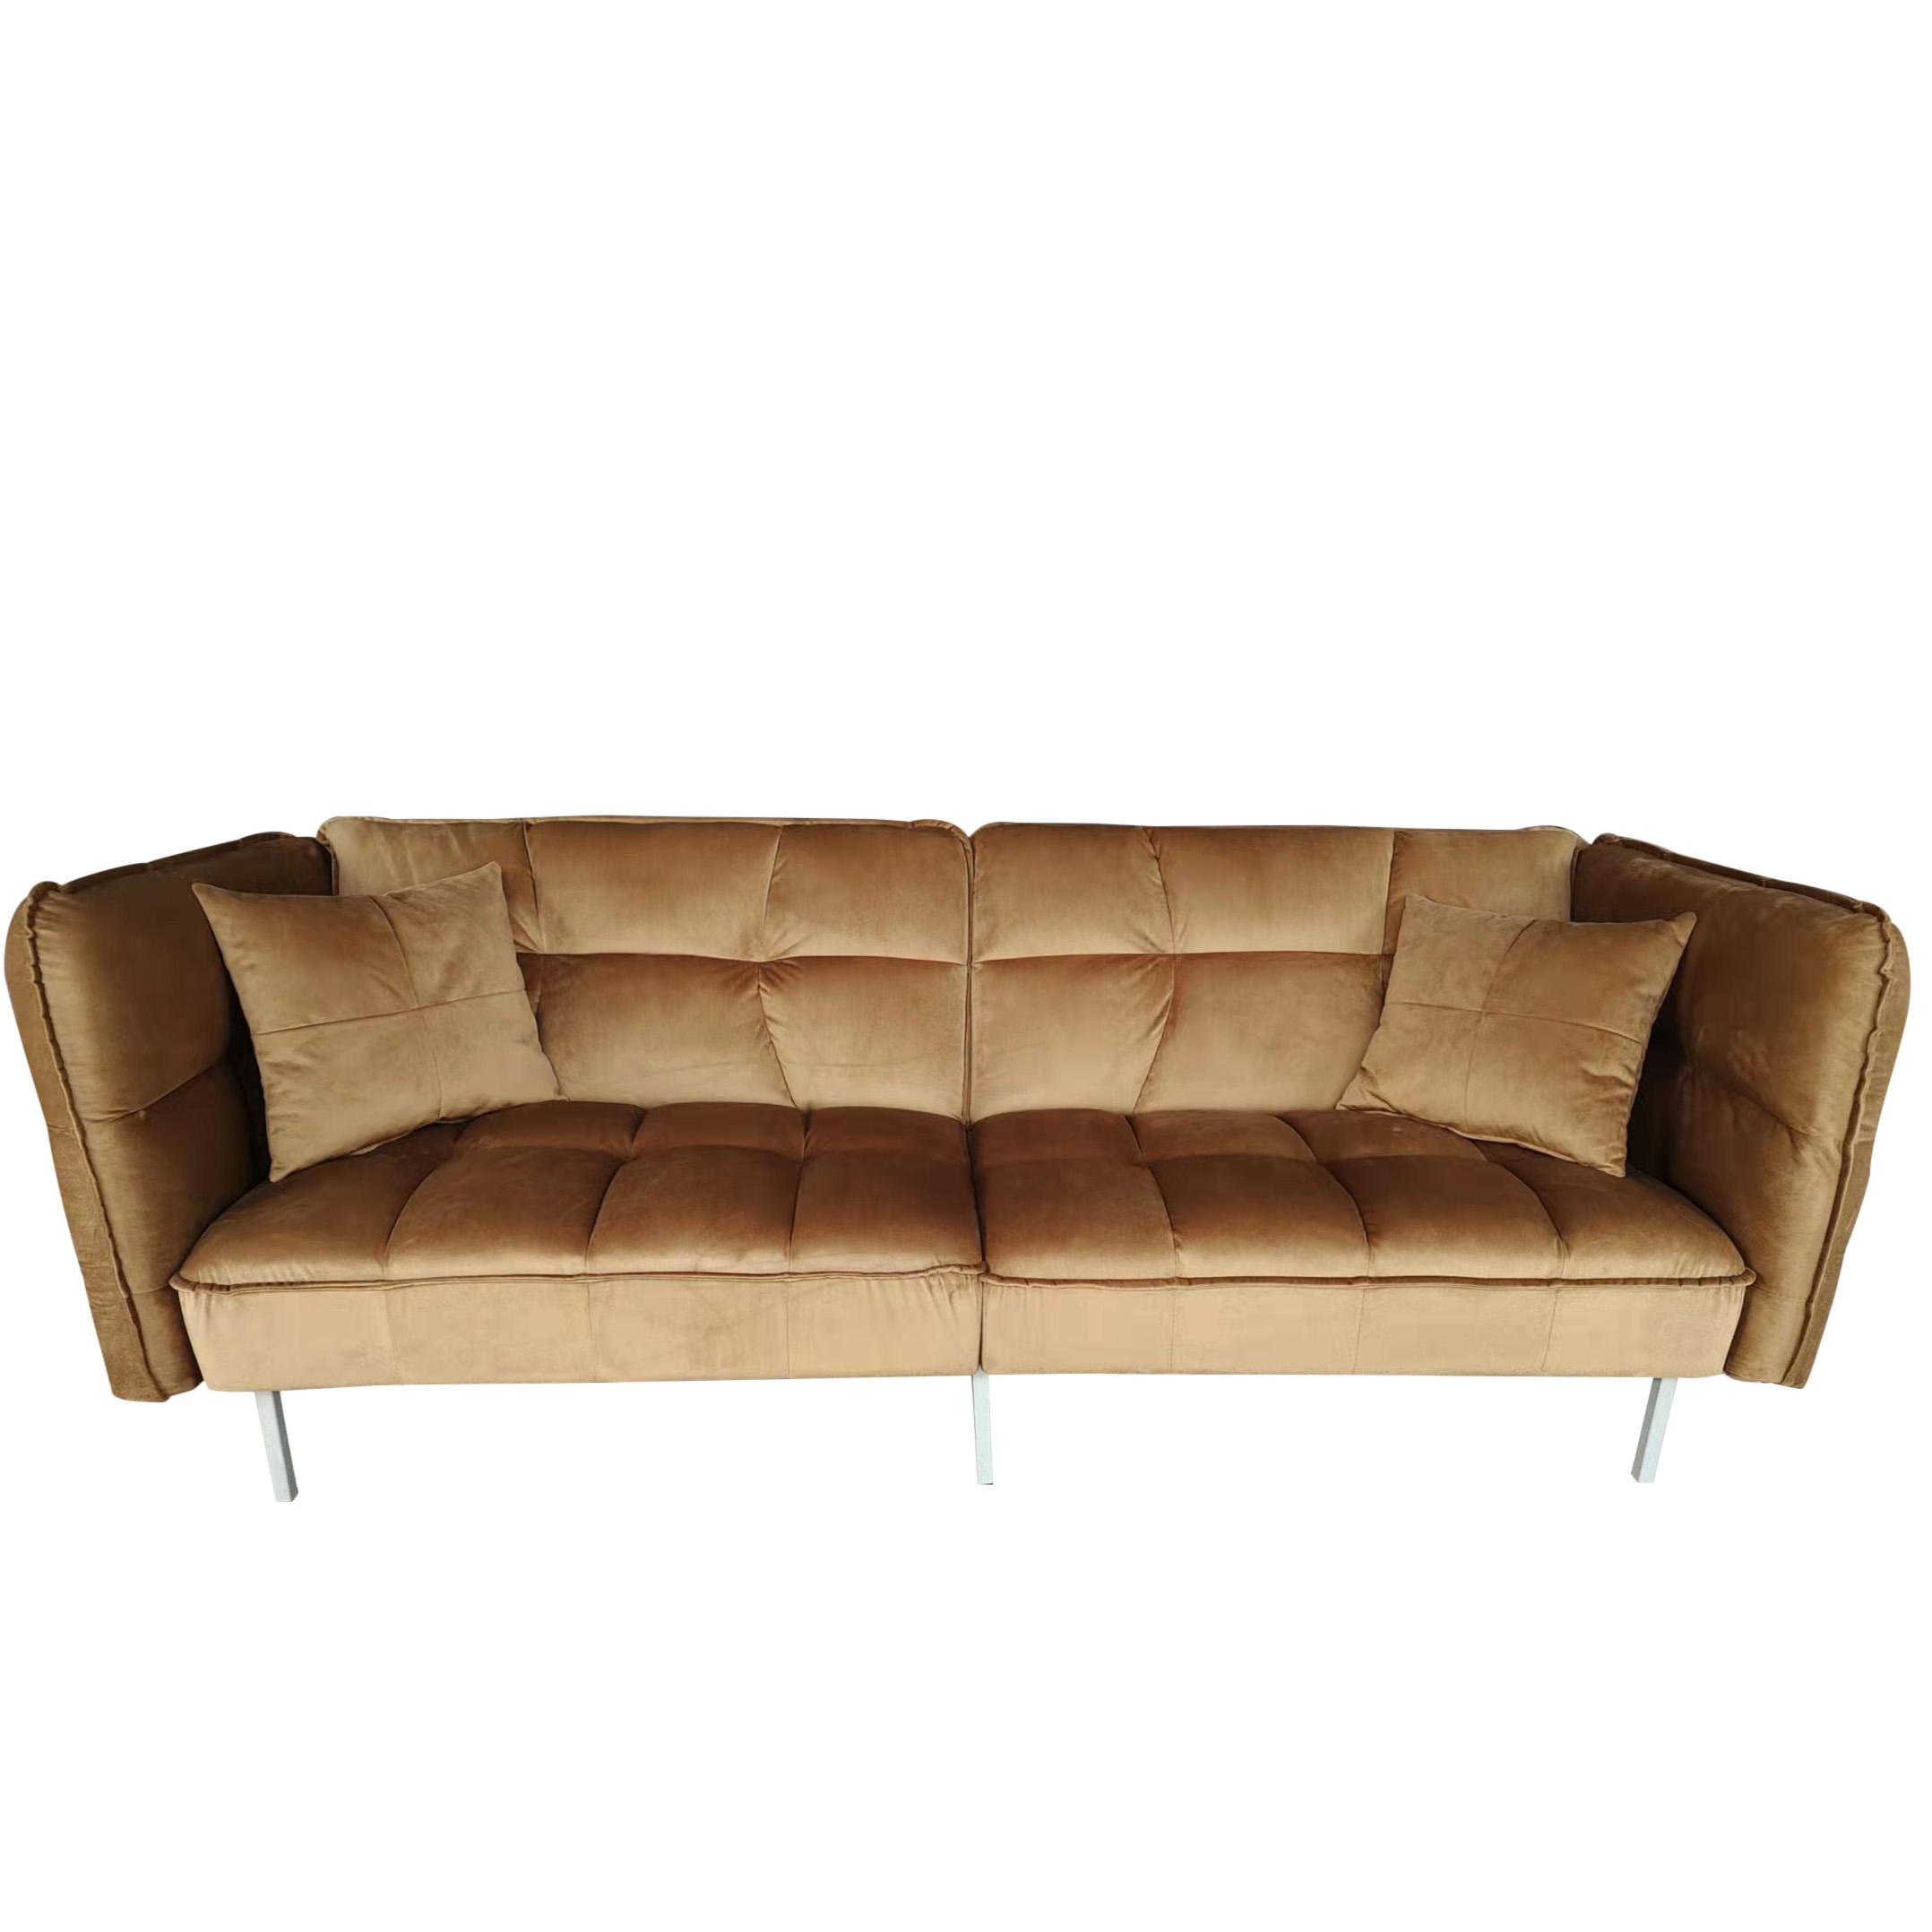 Sofa "Nelly", Dreisitzer, beige, Samtbezug - Beige/Silberfarben, MODERN, Holz/Textil (208/78/76,5cm) - Bessagi Home